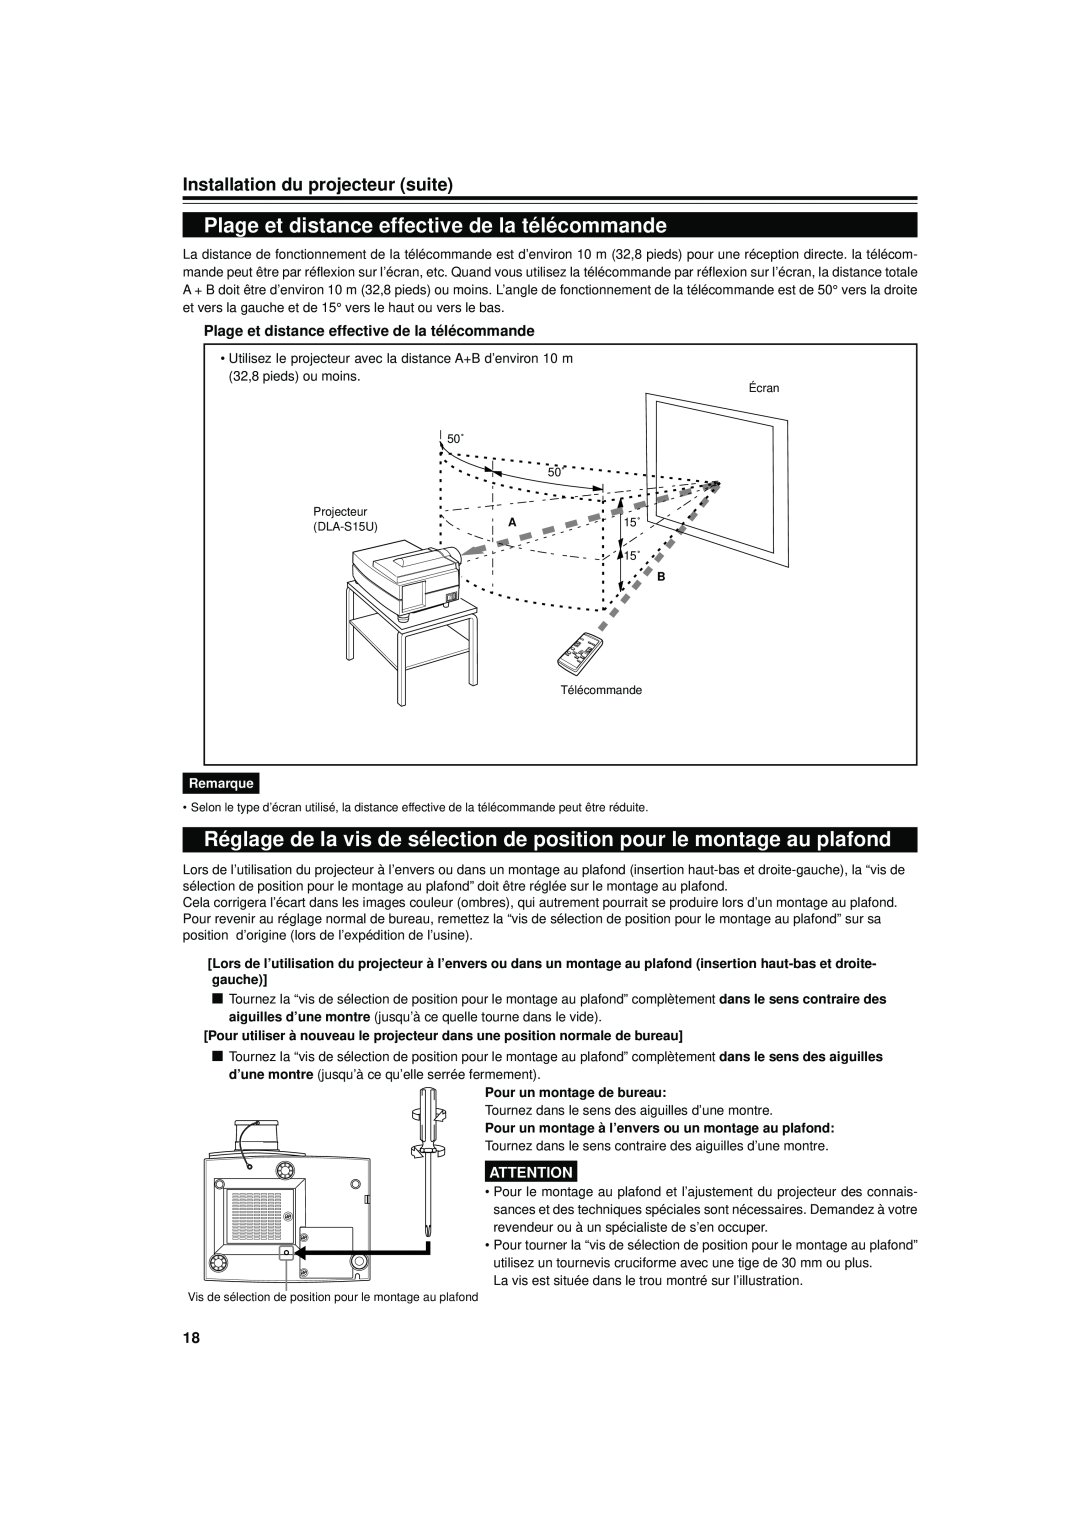 JVC DLA-S15U manual Plage et distance effective de la télécommande, Installation du projecteur suite, Remarque 